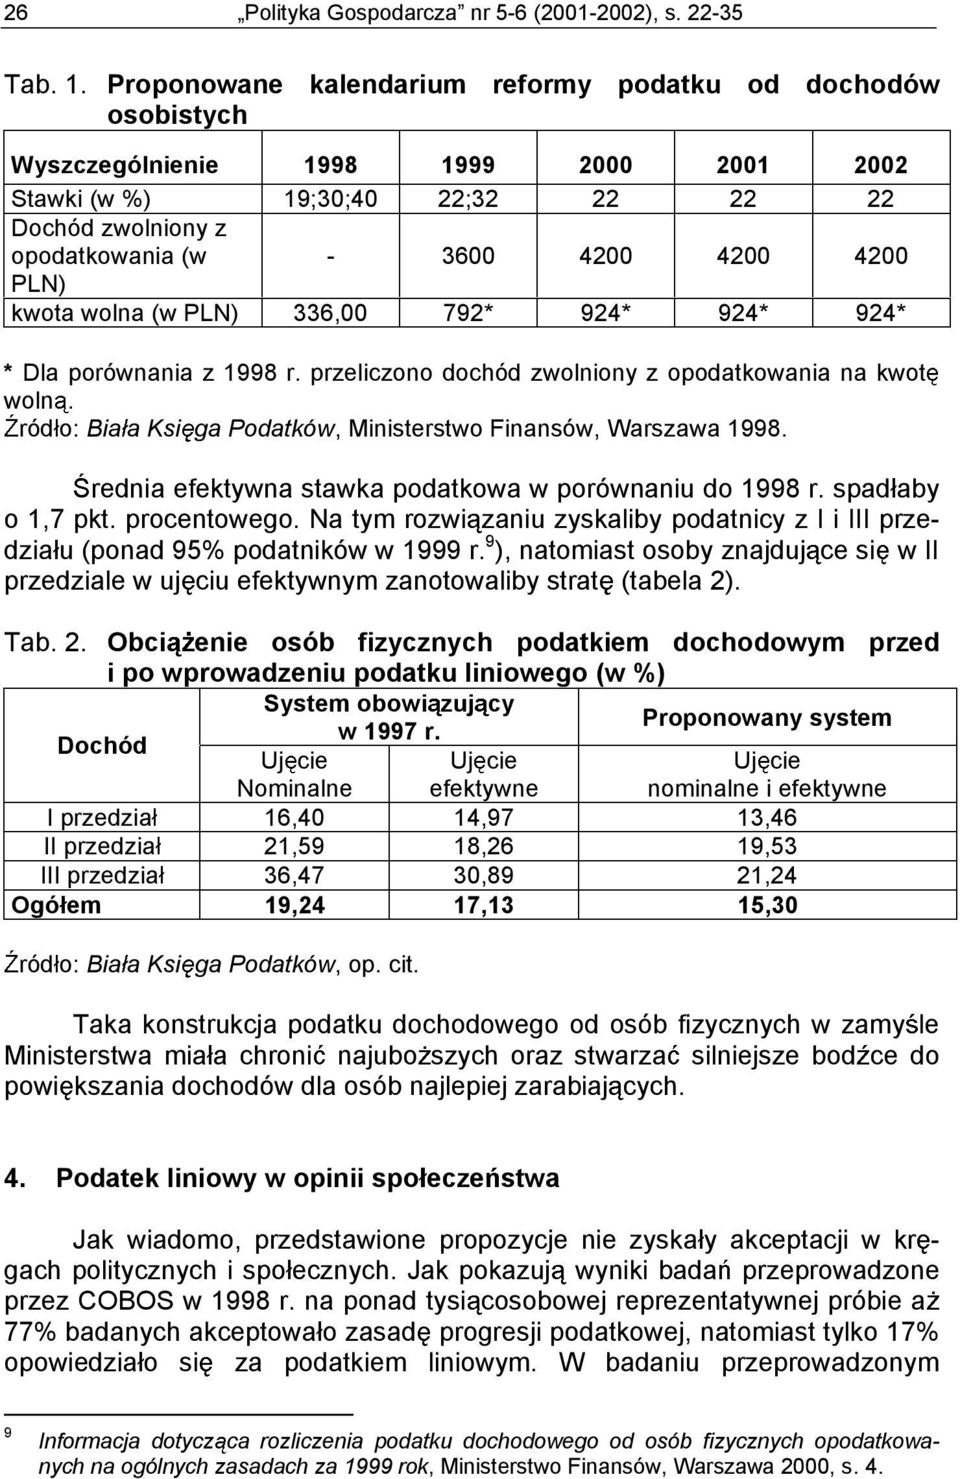 PLN) kwota wolna (w PLN) 336,00 792* 924* 924* 924* * Dla porównania z 1998 r. przeliczono dochód zwolniony z opodatkowania na kwot woln.